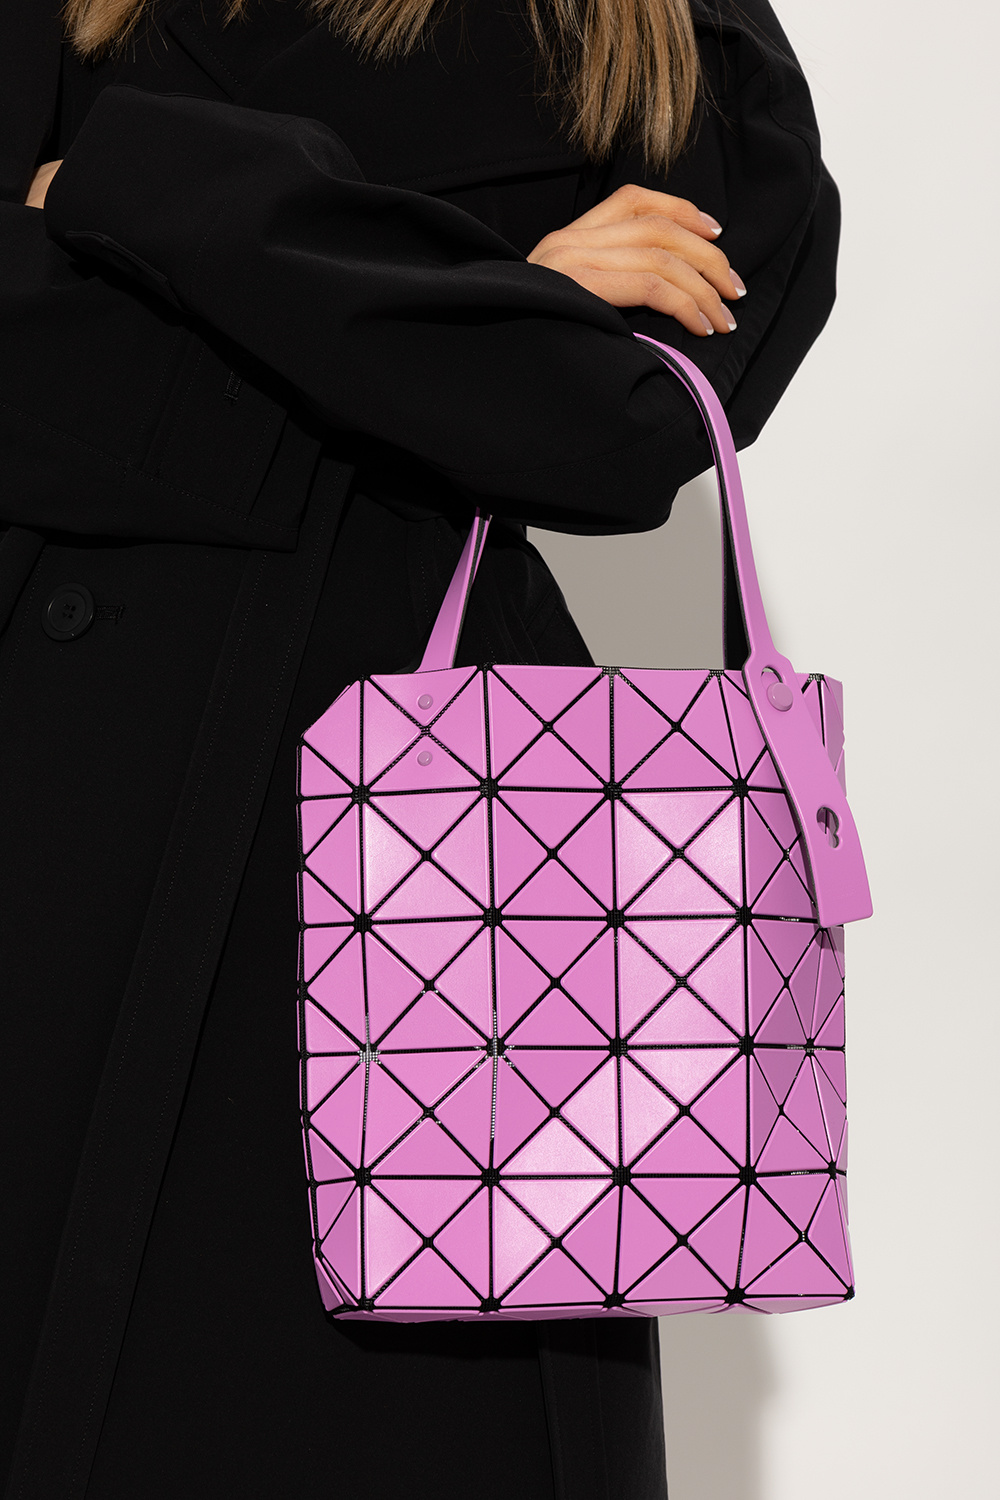 Bao Bao Issey Miyake 'Lucent Boxy' shopper bag | GenesinlifeShops